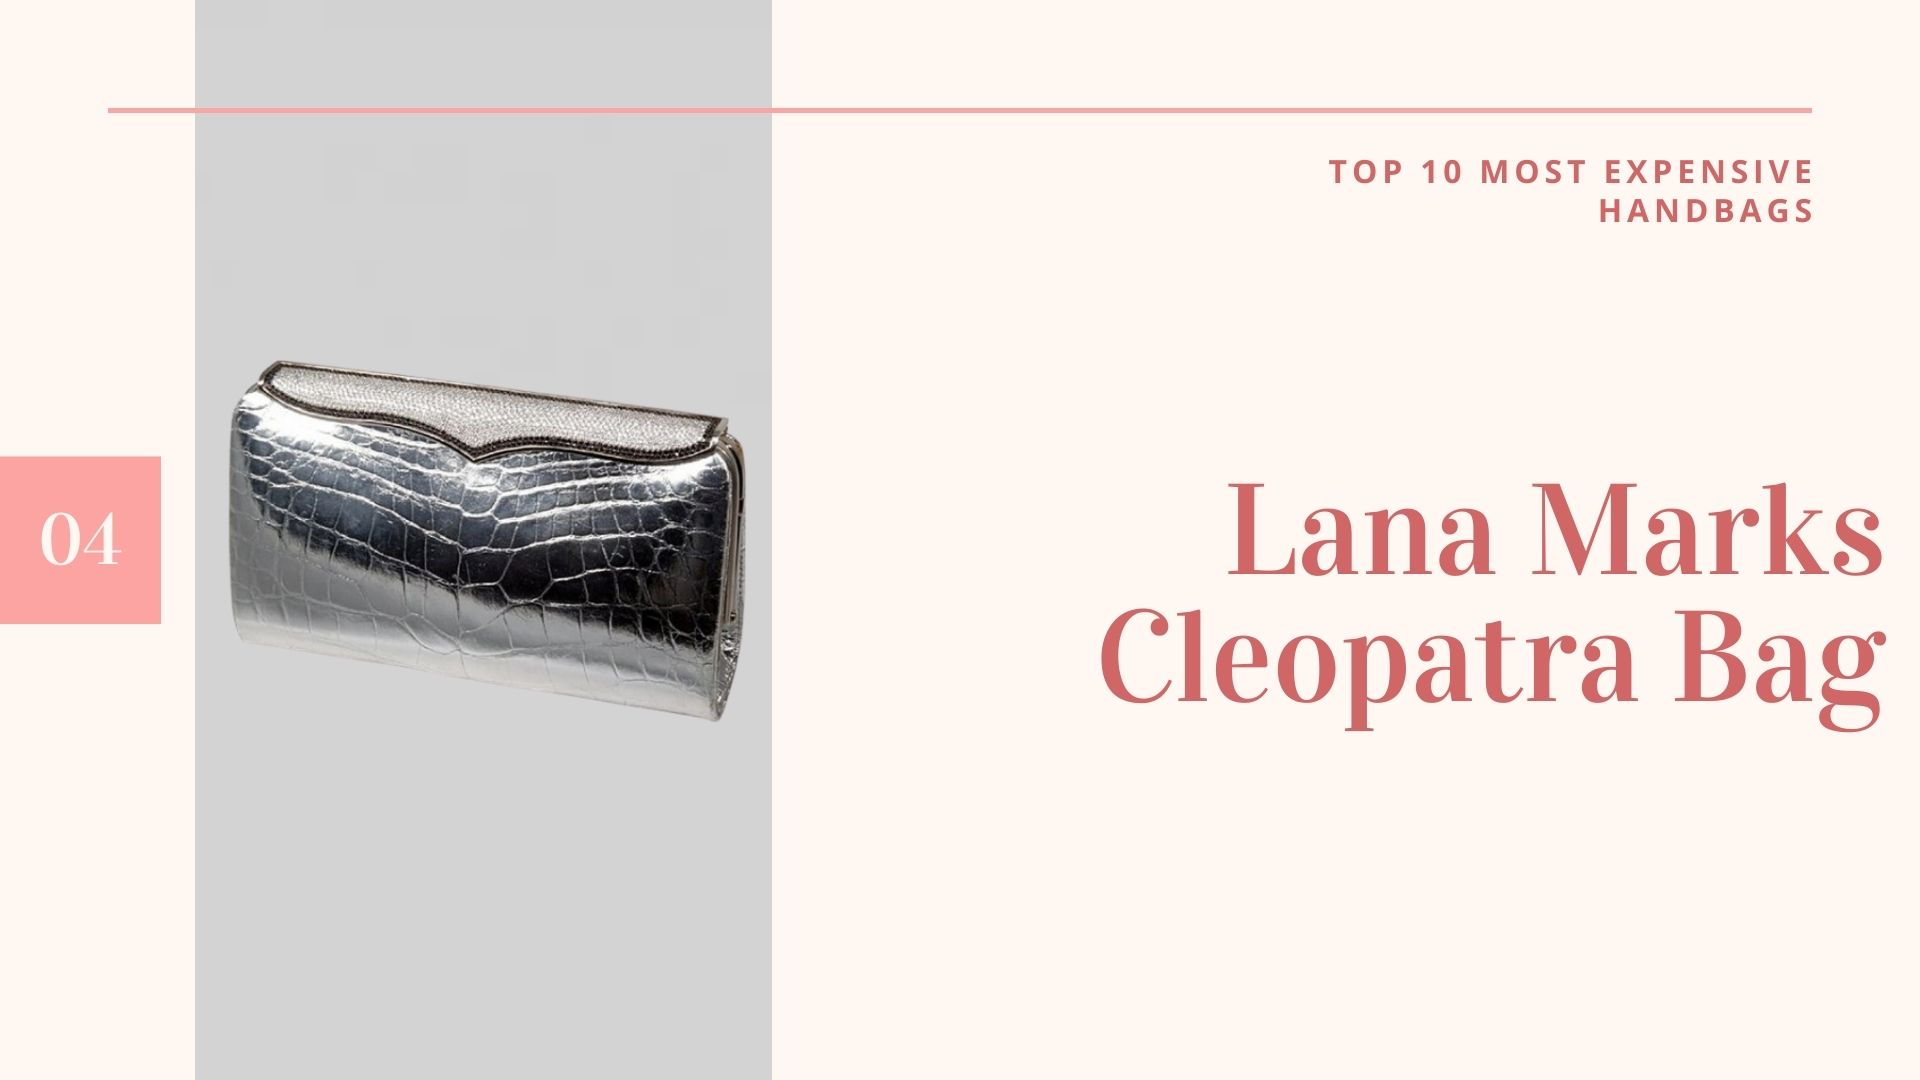 กระเป๋าที่แพงที่สุดในโลก-กระเป๋าราคาแพงที่สุดในโลก-กระเป๋าราคาแพงที่สุดในโลก-10กระเป๋าแพงที่สุดในโลก-กระเป๋าแพงที่สุดในโลก ราคา-Lana Marks Cleopatra Bag